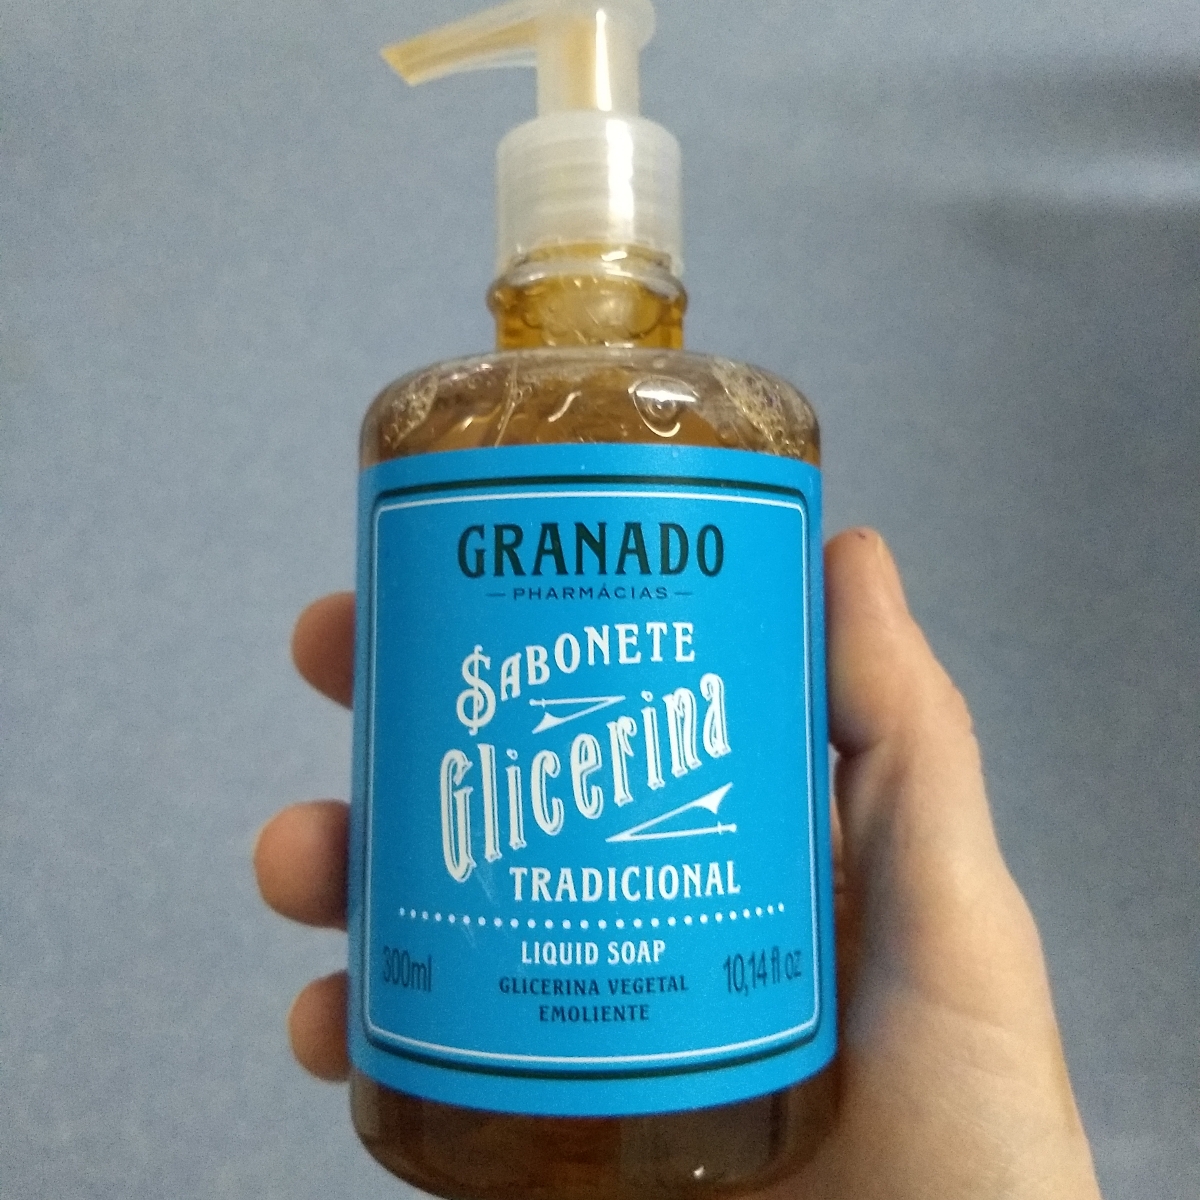 Granado Sabonete Glicerina Tradicional Reviews | abillion